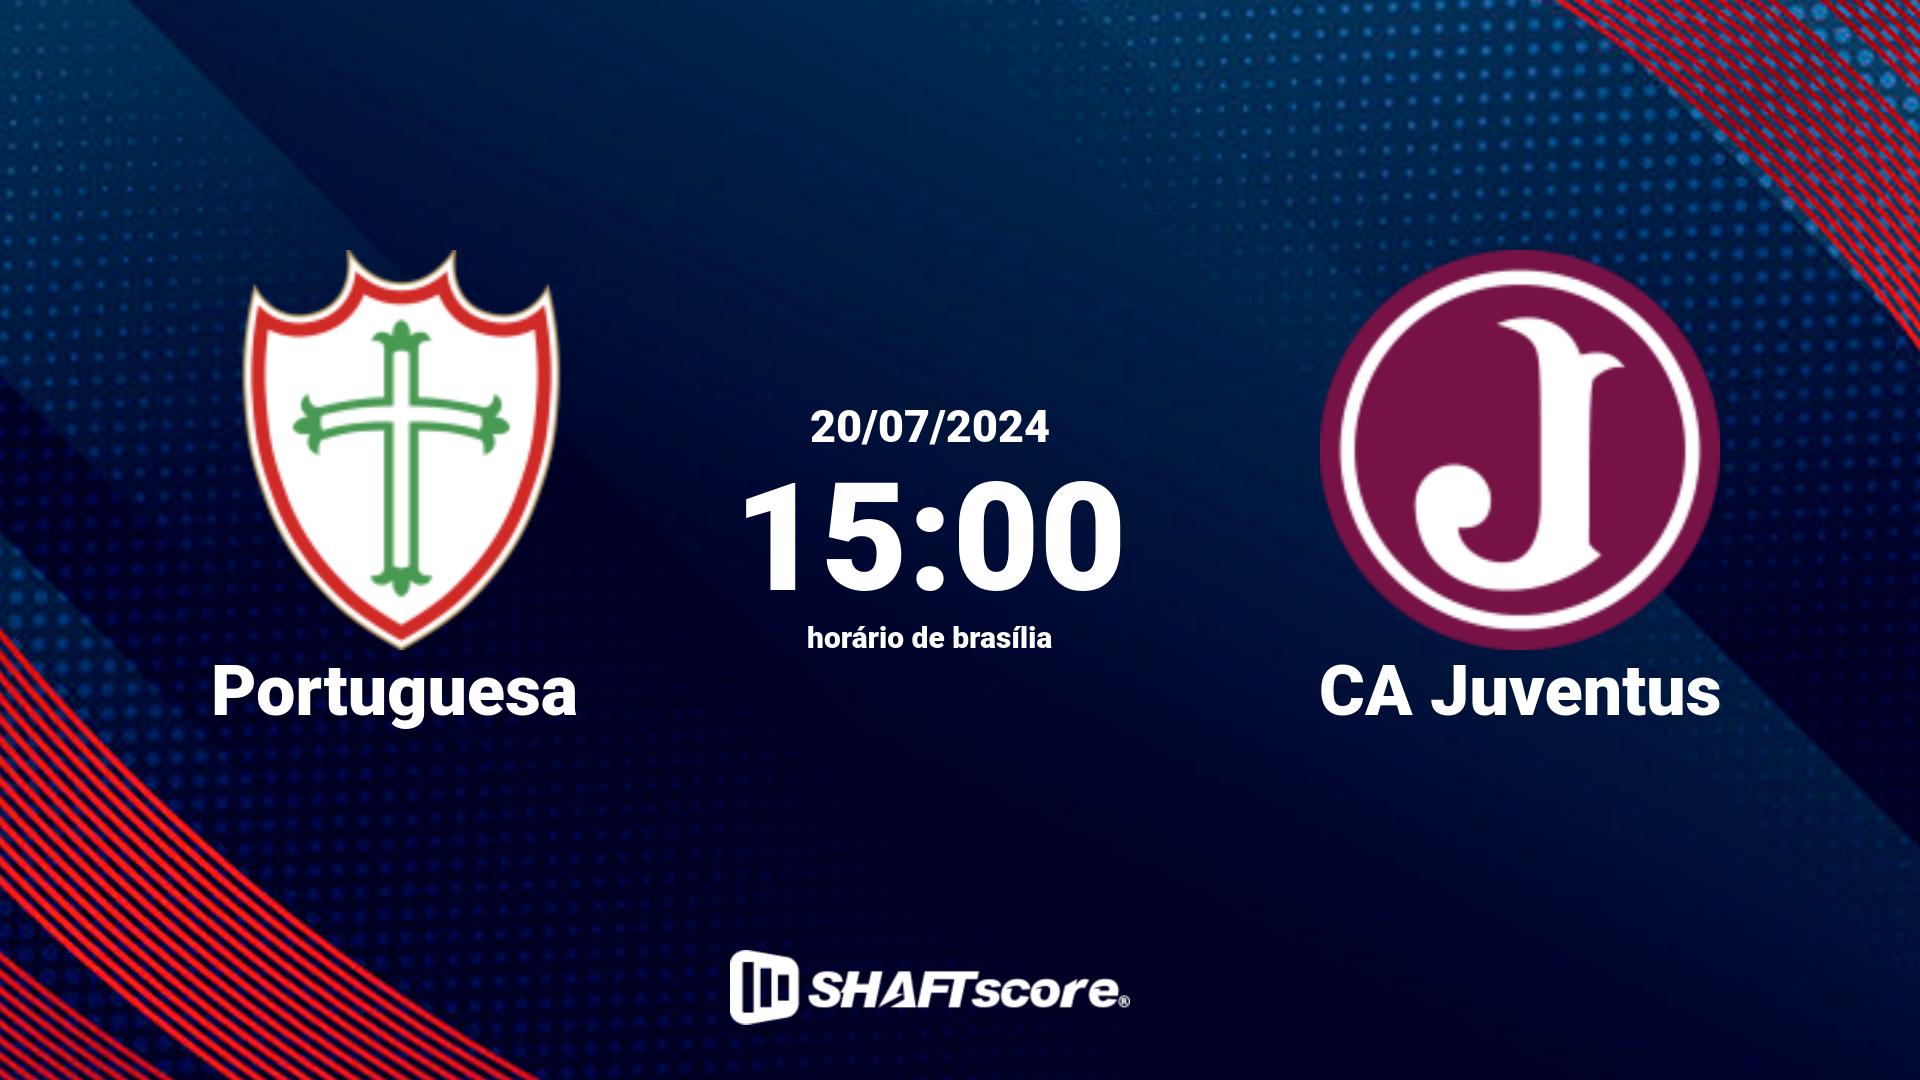 Estatísticas do jogo Portuguesa vs CA Juventus 20.07 15:00